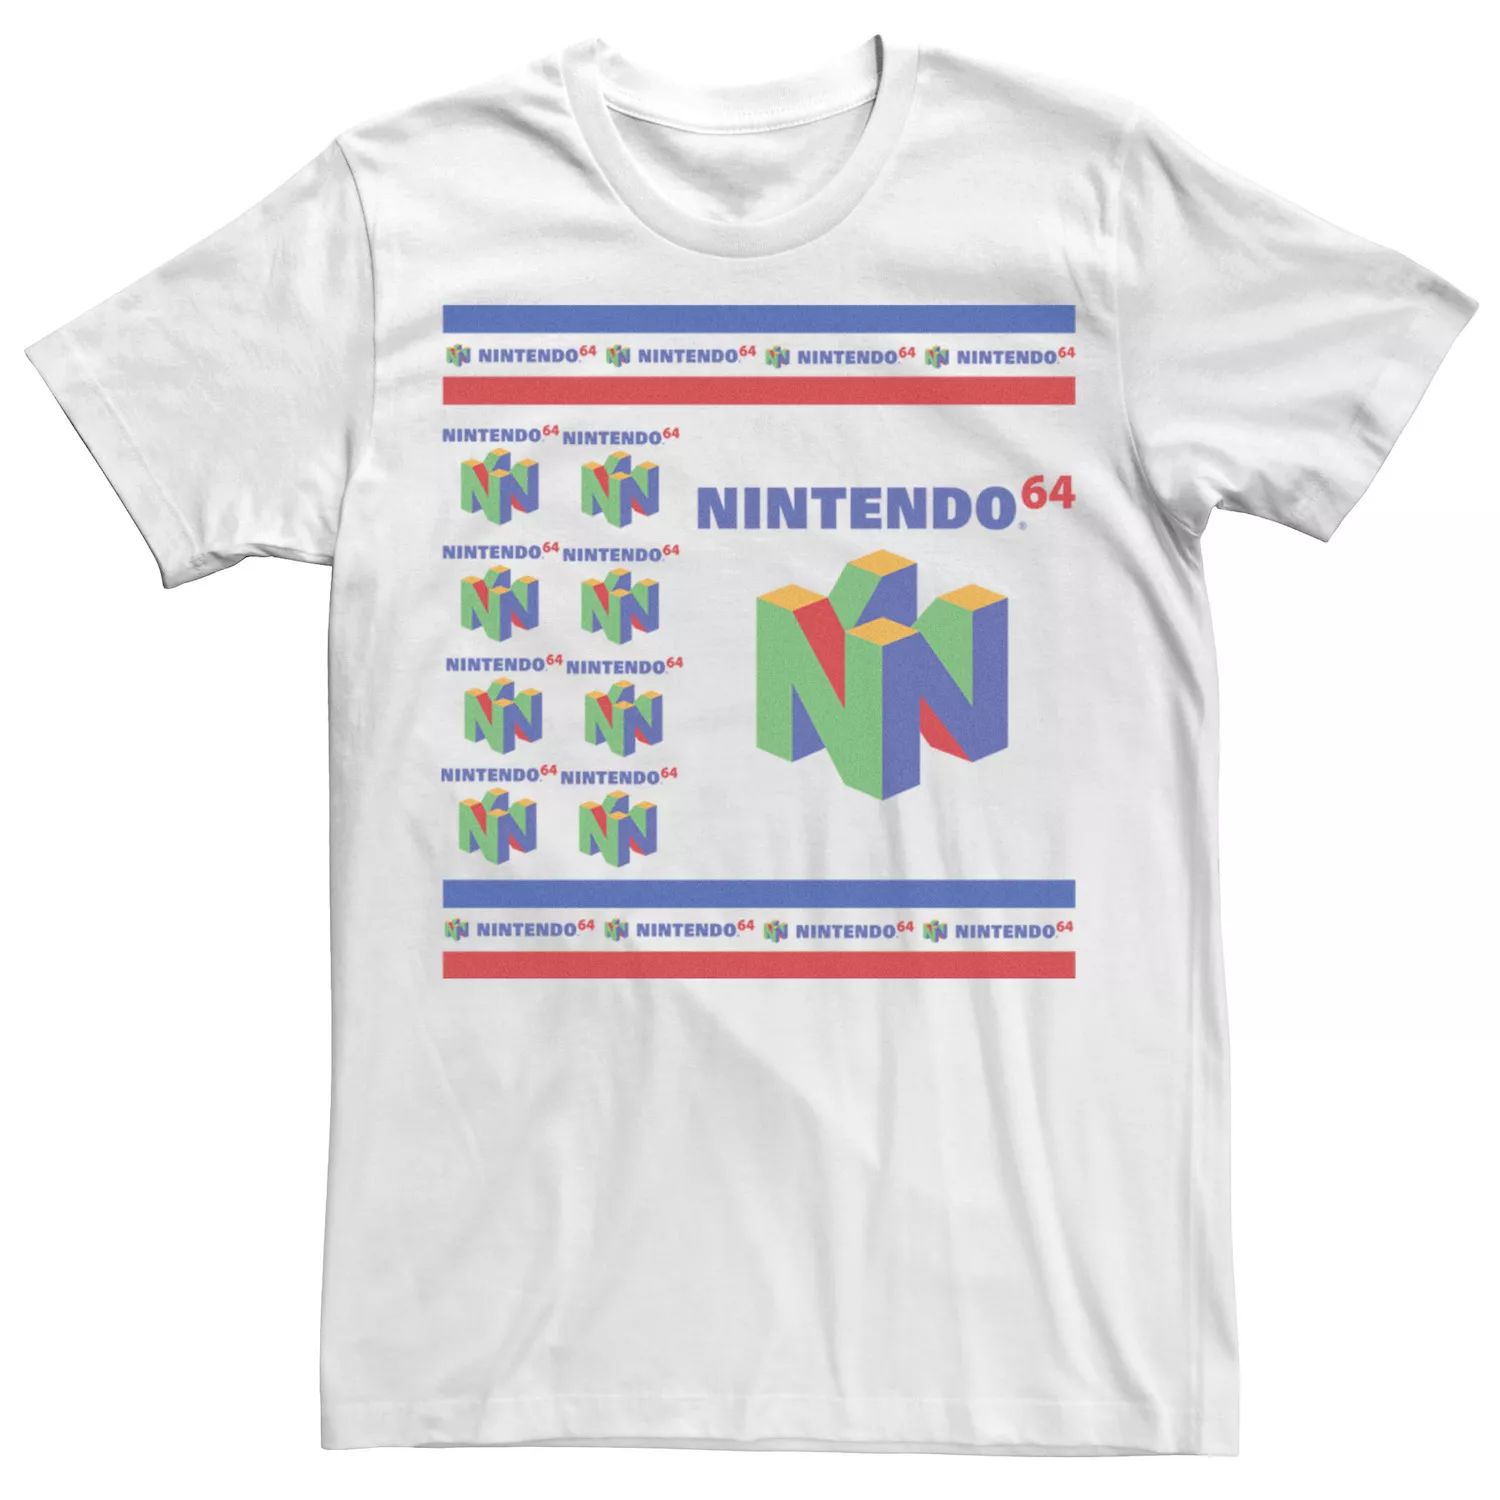 Мужская футболка с оригинальным логотипом и коллажем Nintendo 64 Licensed Character